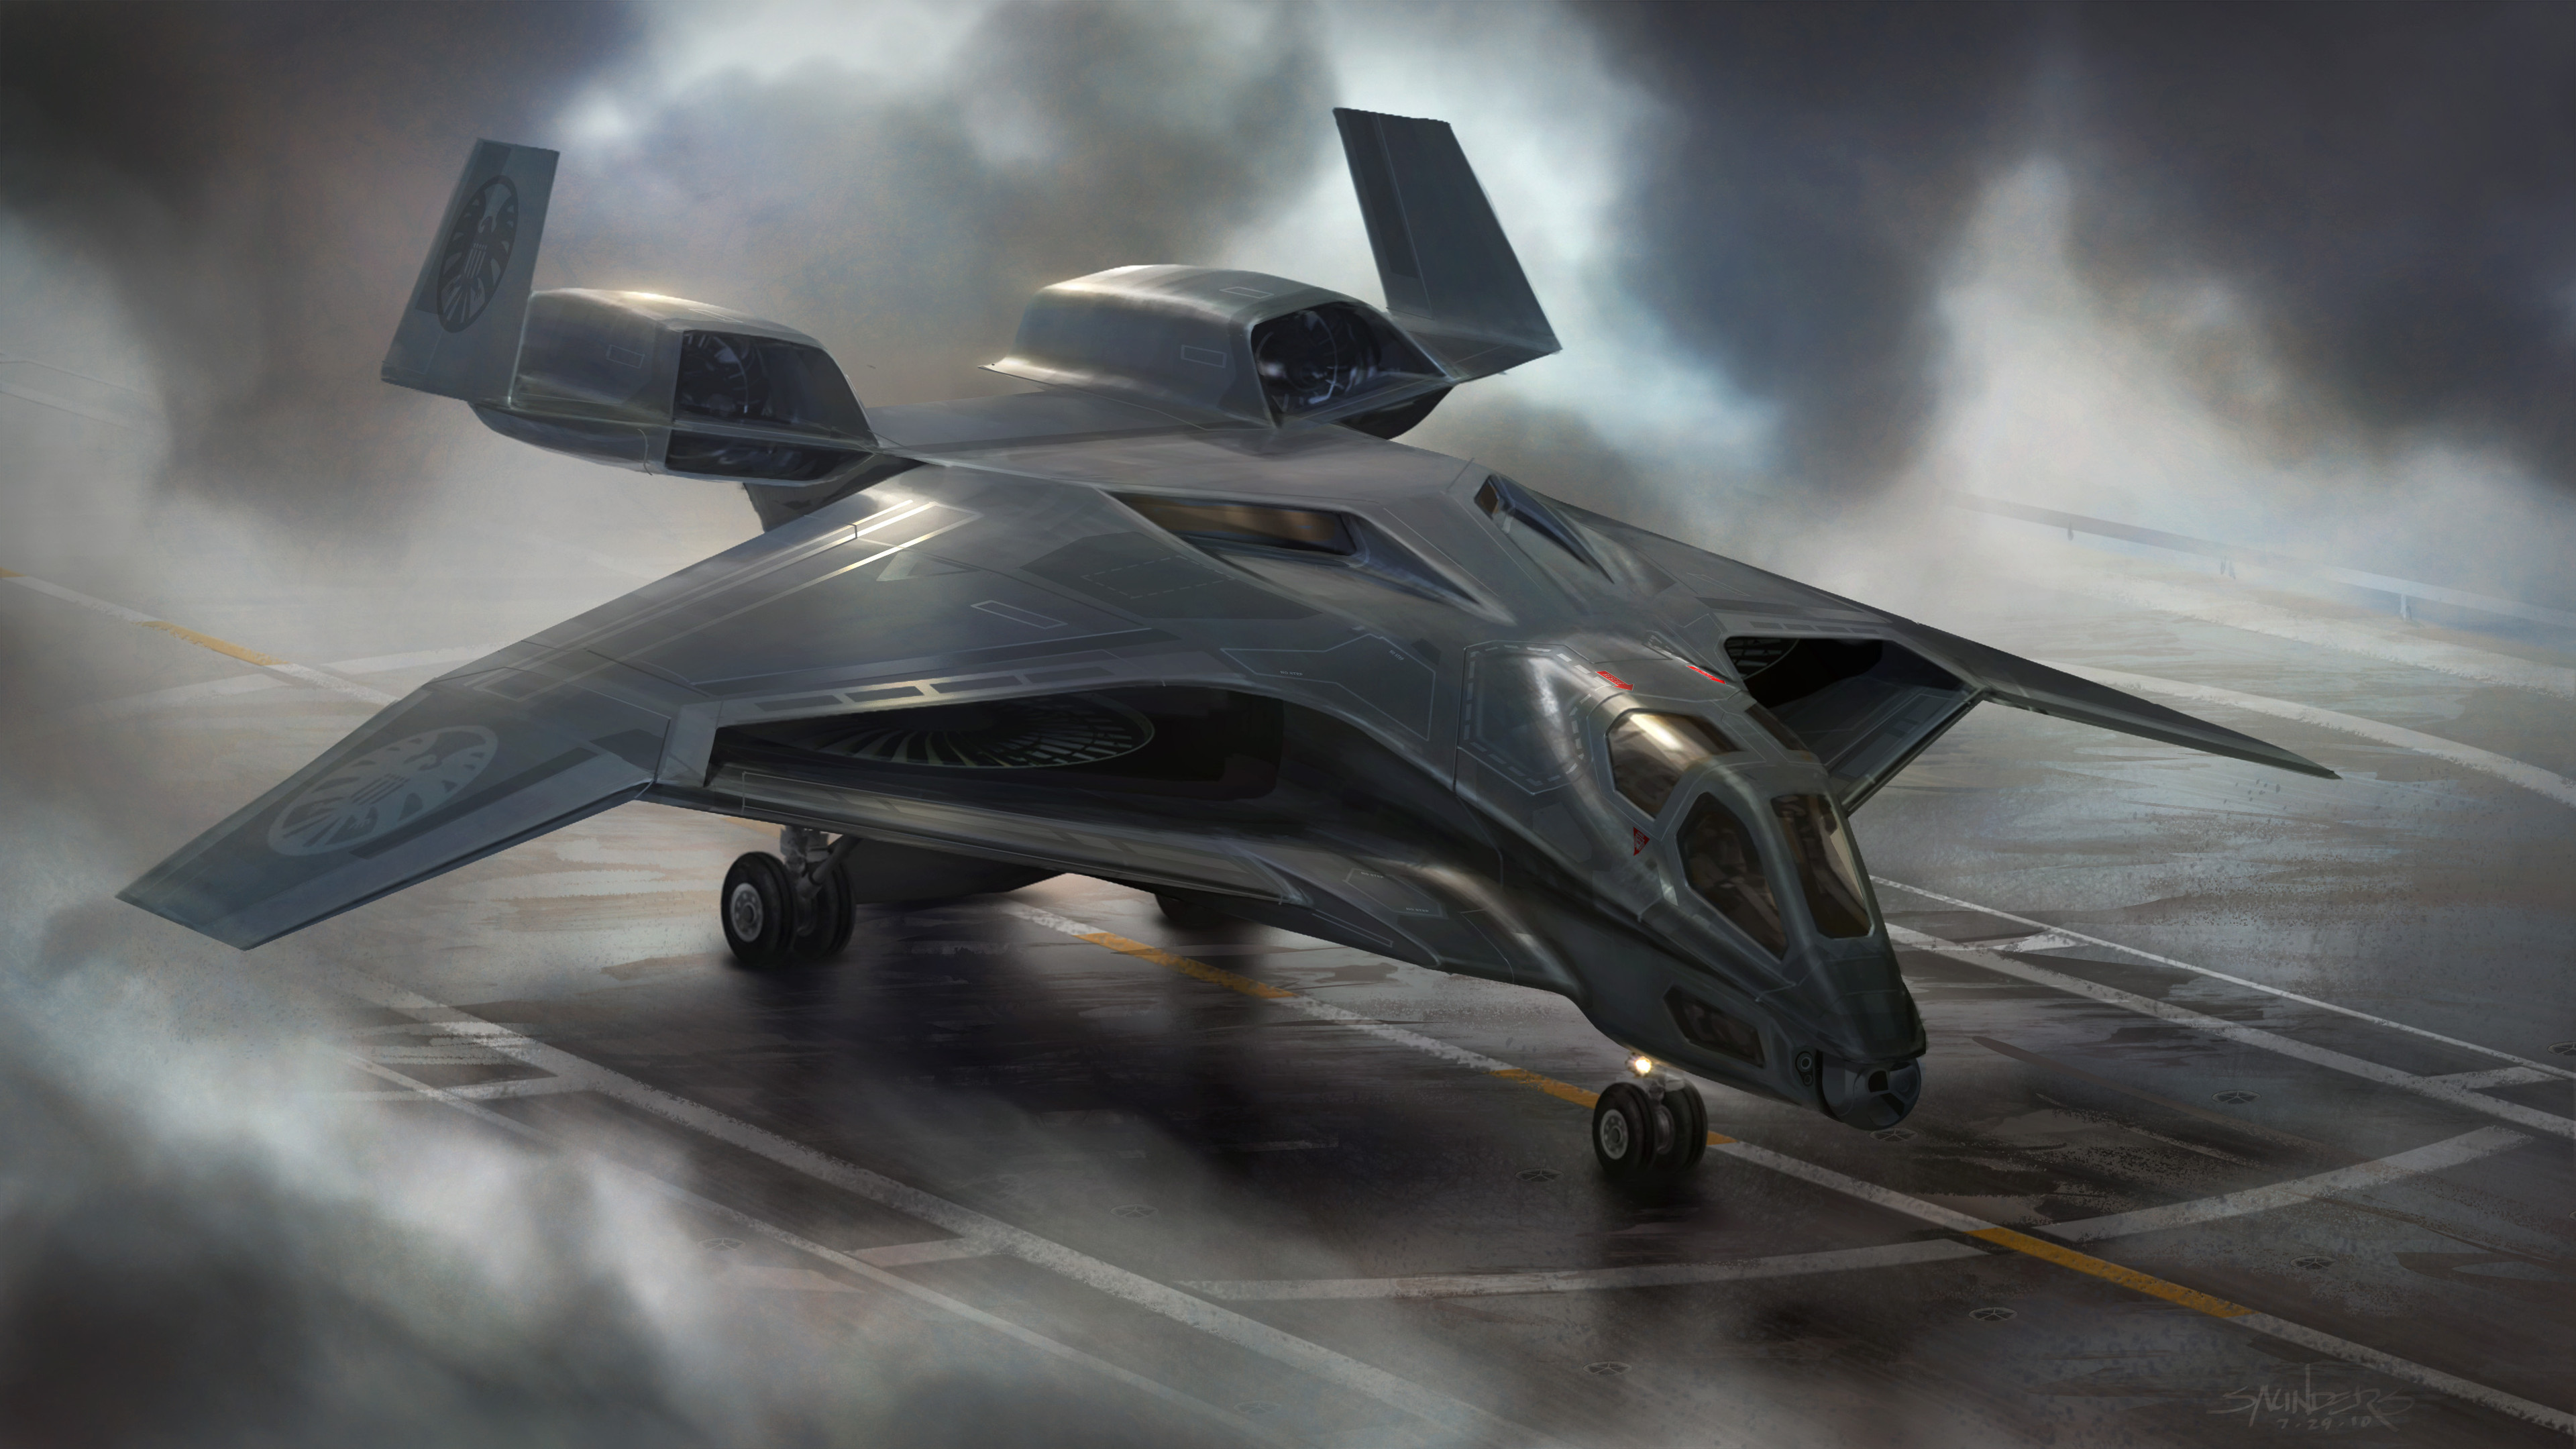 Jet future. Стелс шаттл концепт. Стелс космический корабль будущего. Самолет стелс 2020. Стелс бомбардировщик концепт.